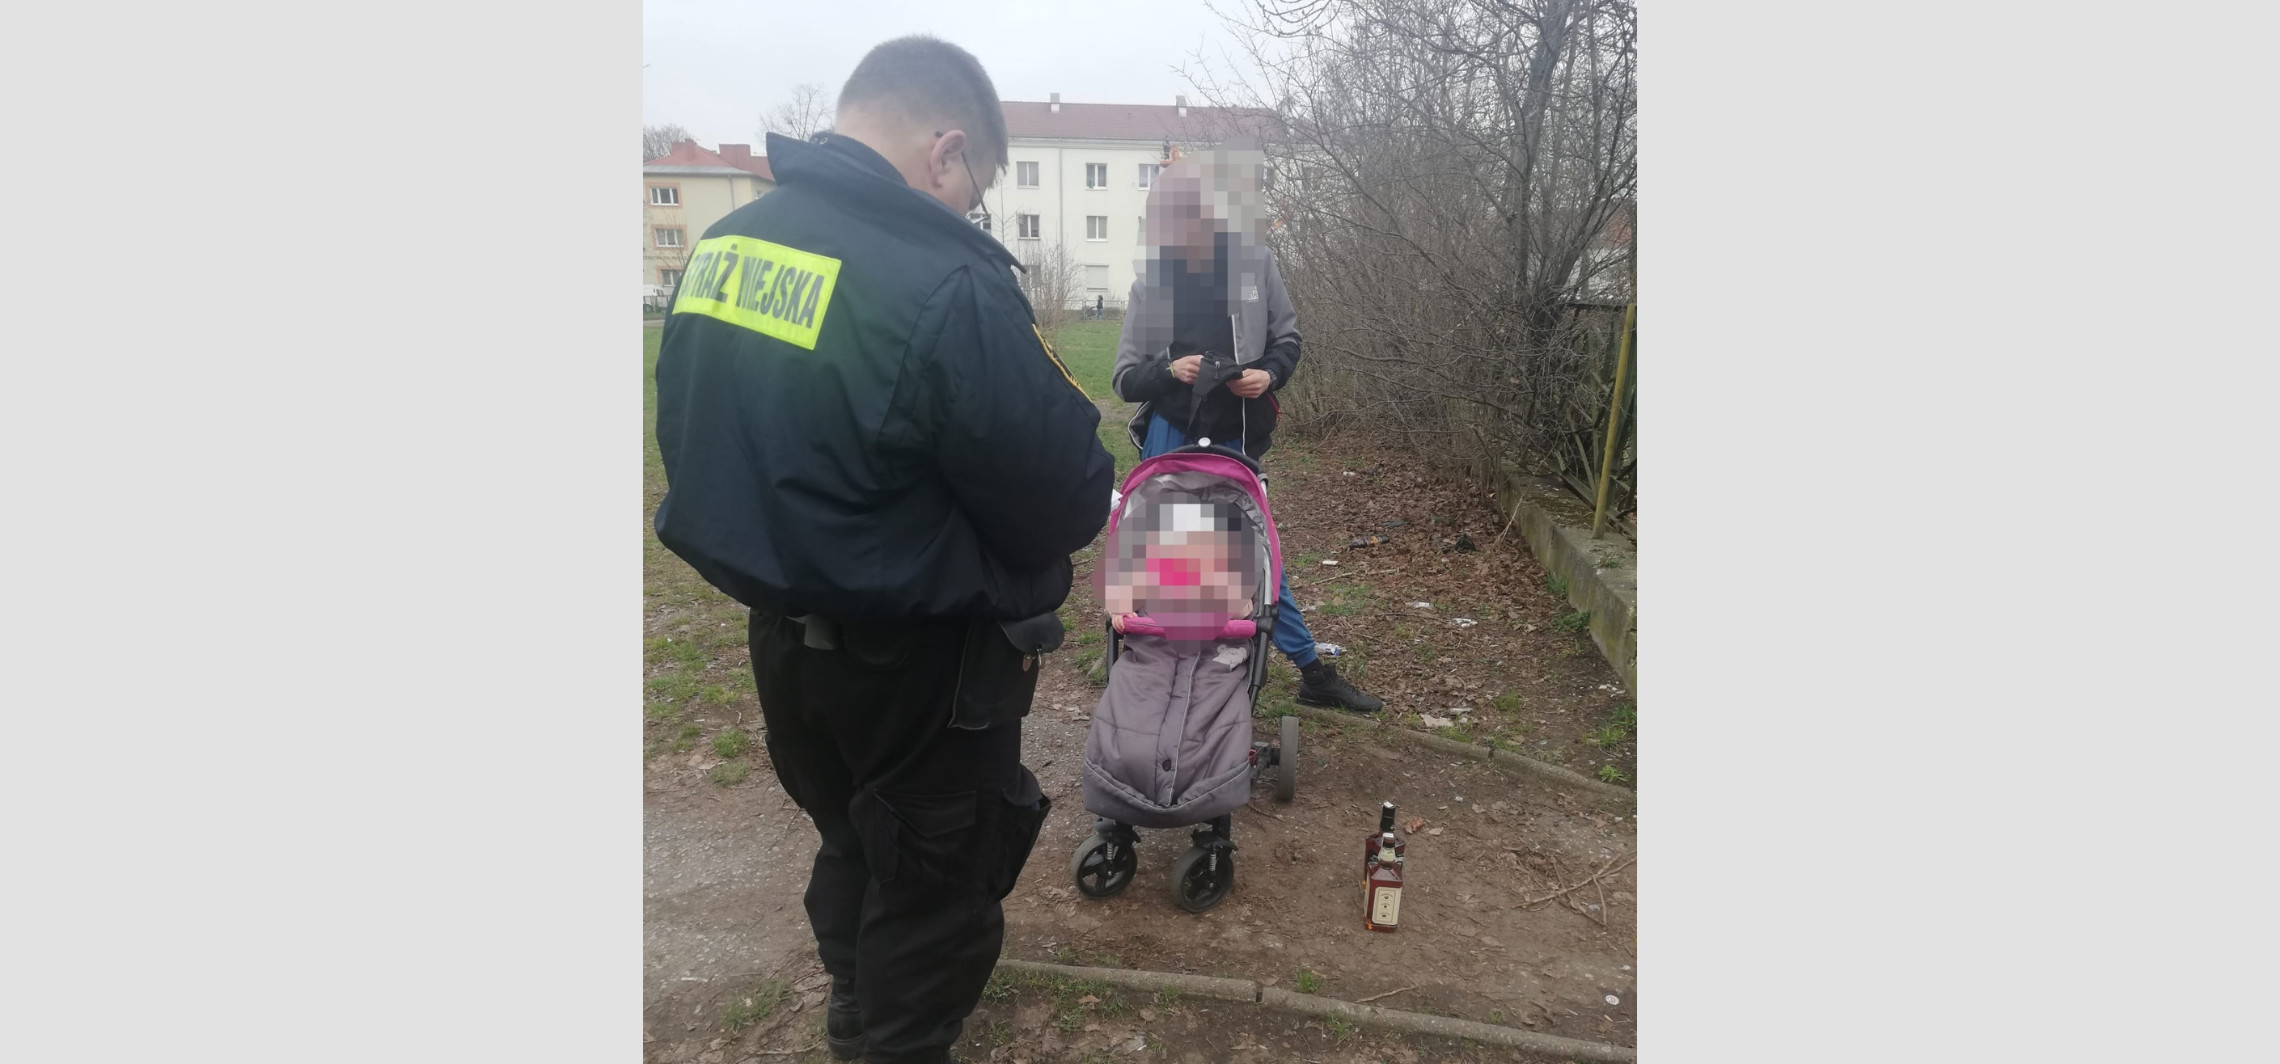 Inowrocław - Poszedł do sklepu z dzieckiem i ukradł alkohol